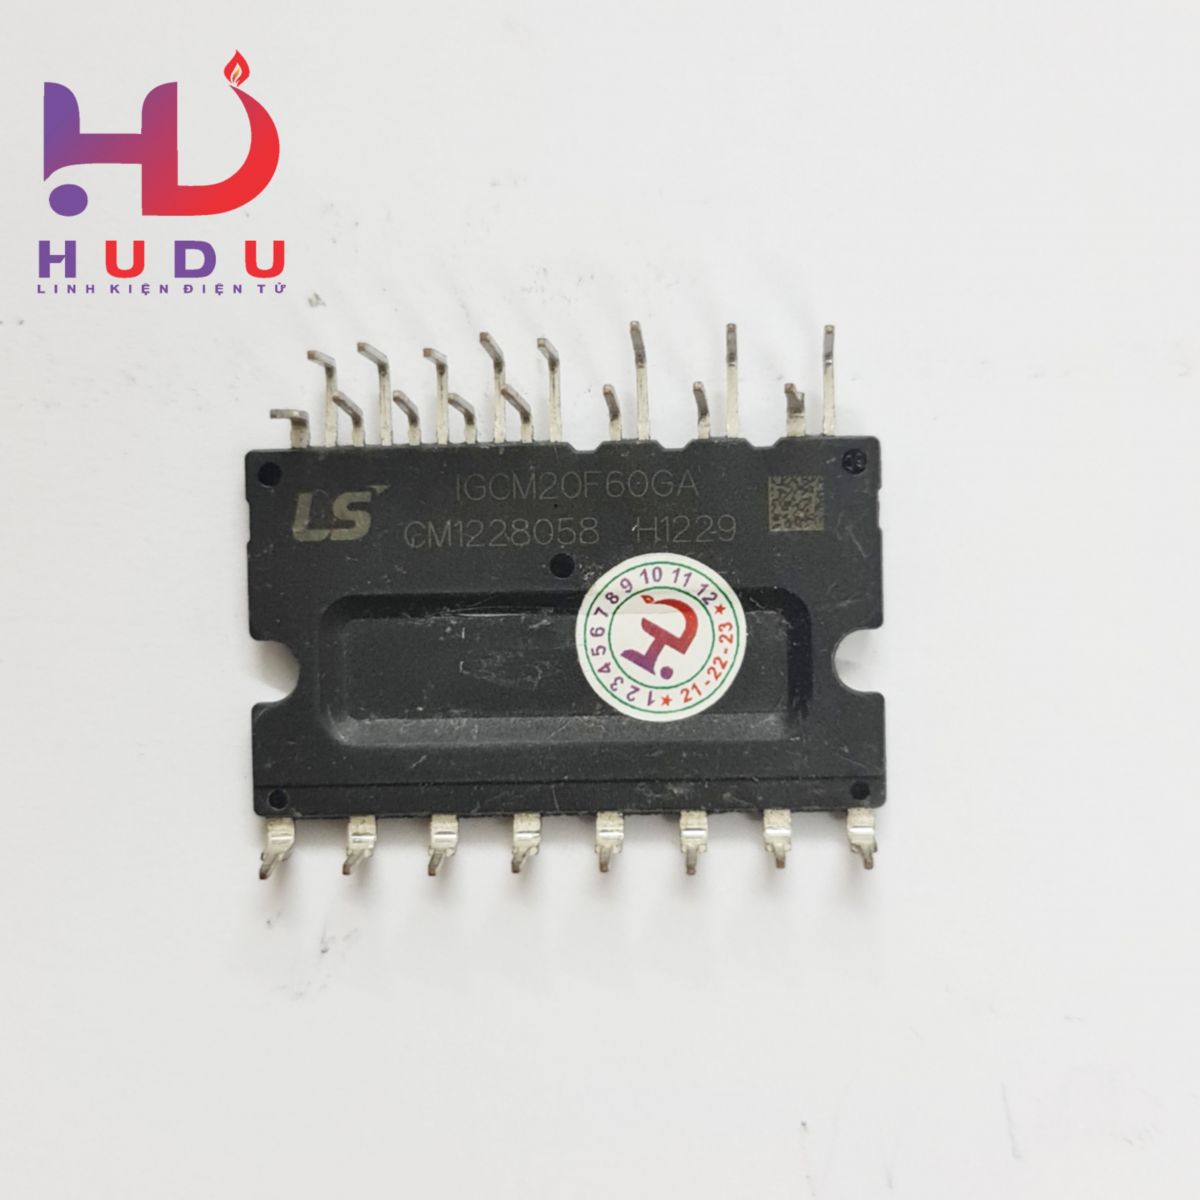 Linh kiện Hudu cung cấp IC công suất FNE41060 mới chất lượng tốt cho khách hàng